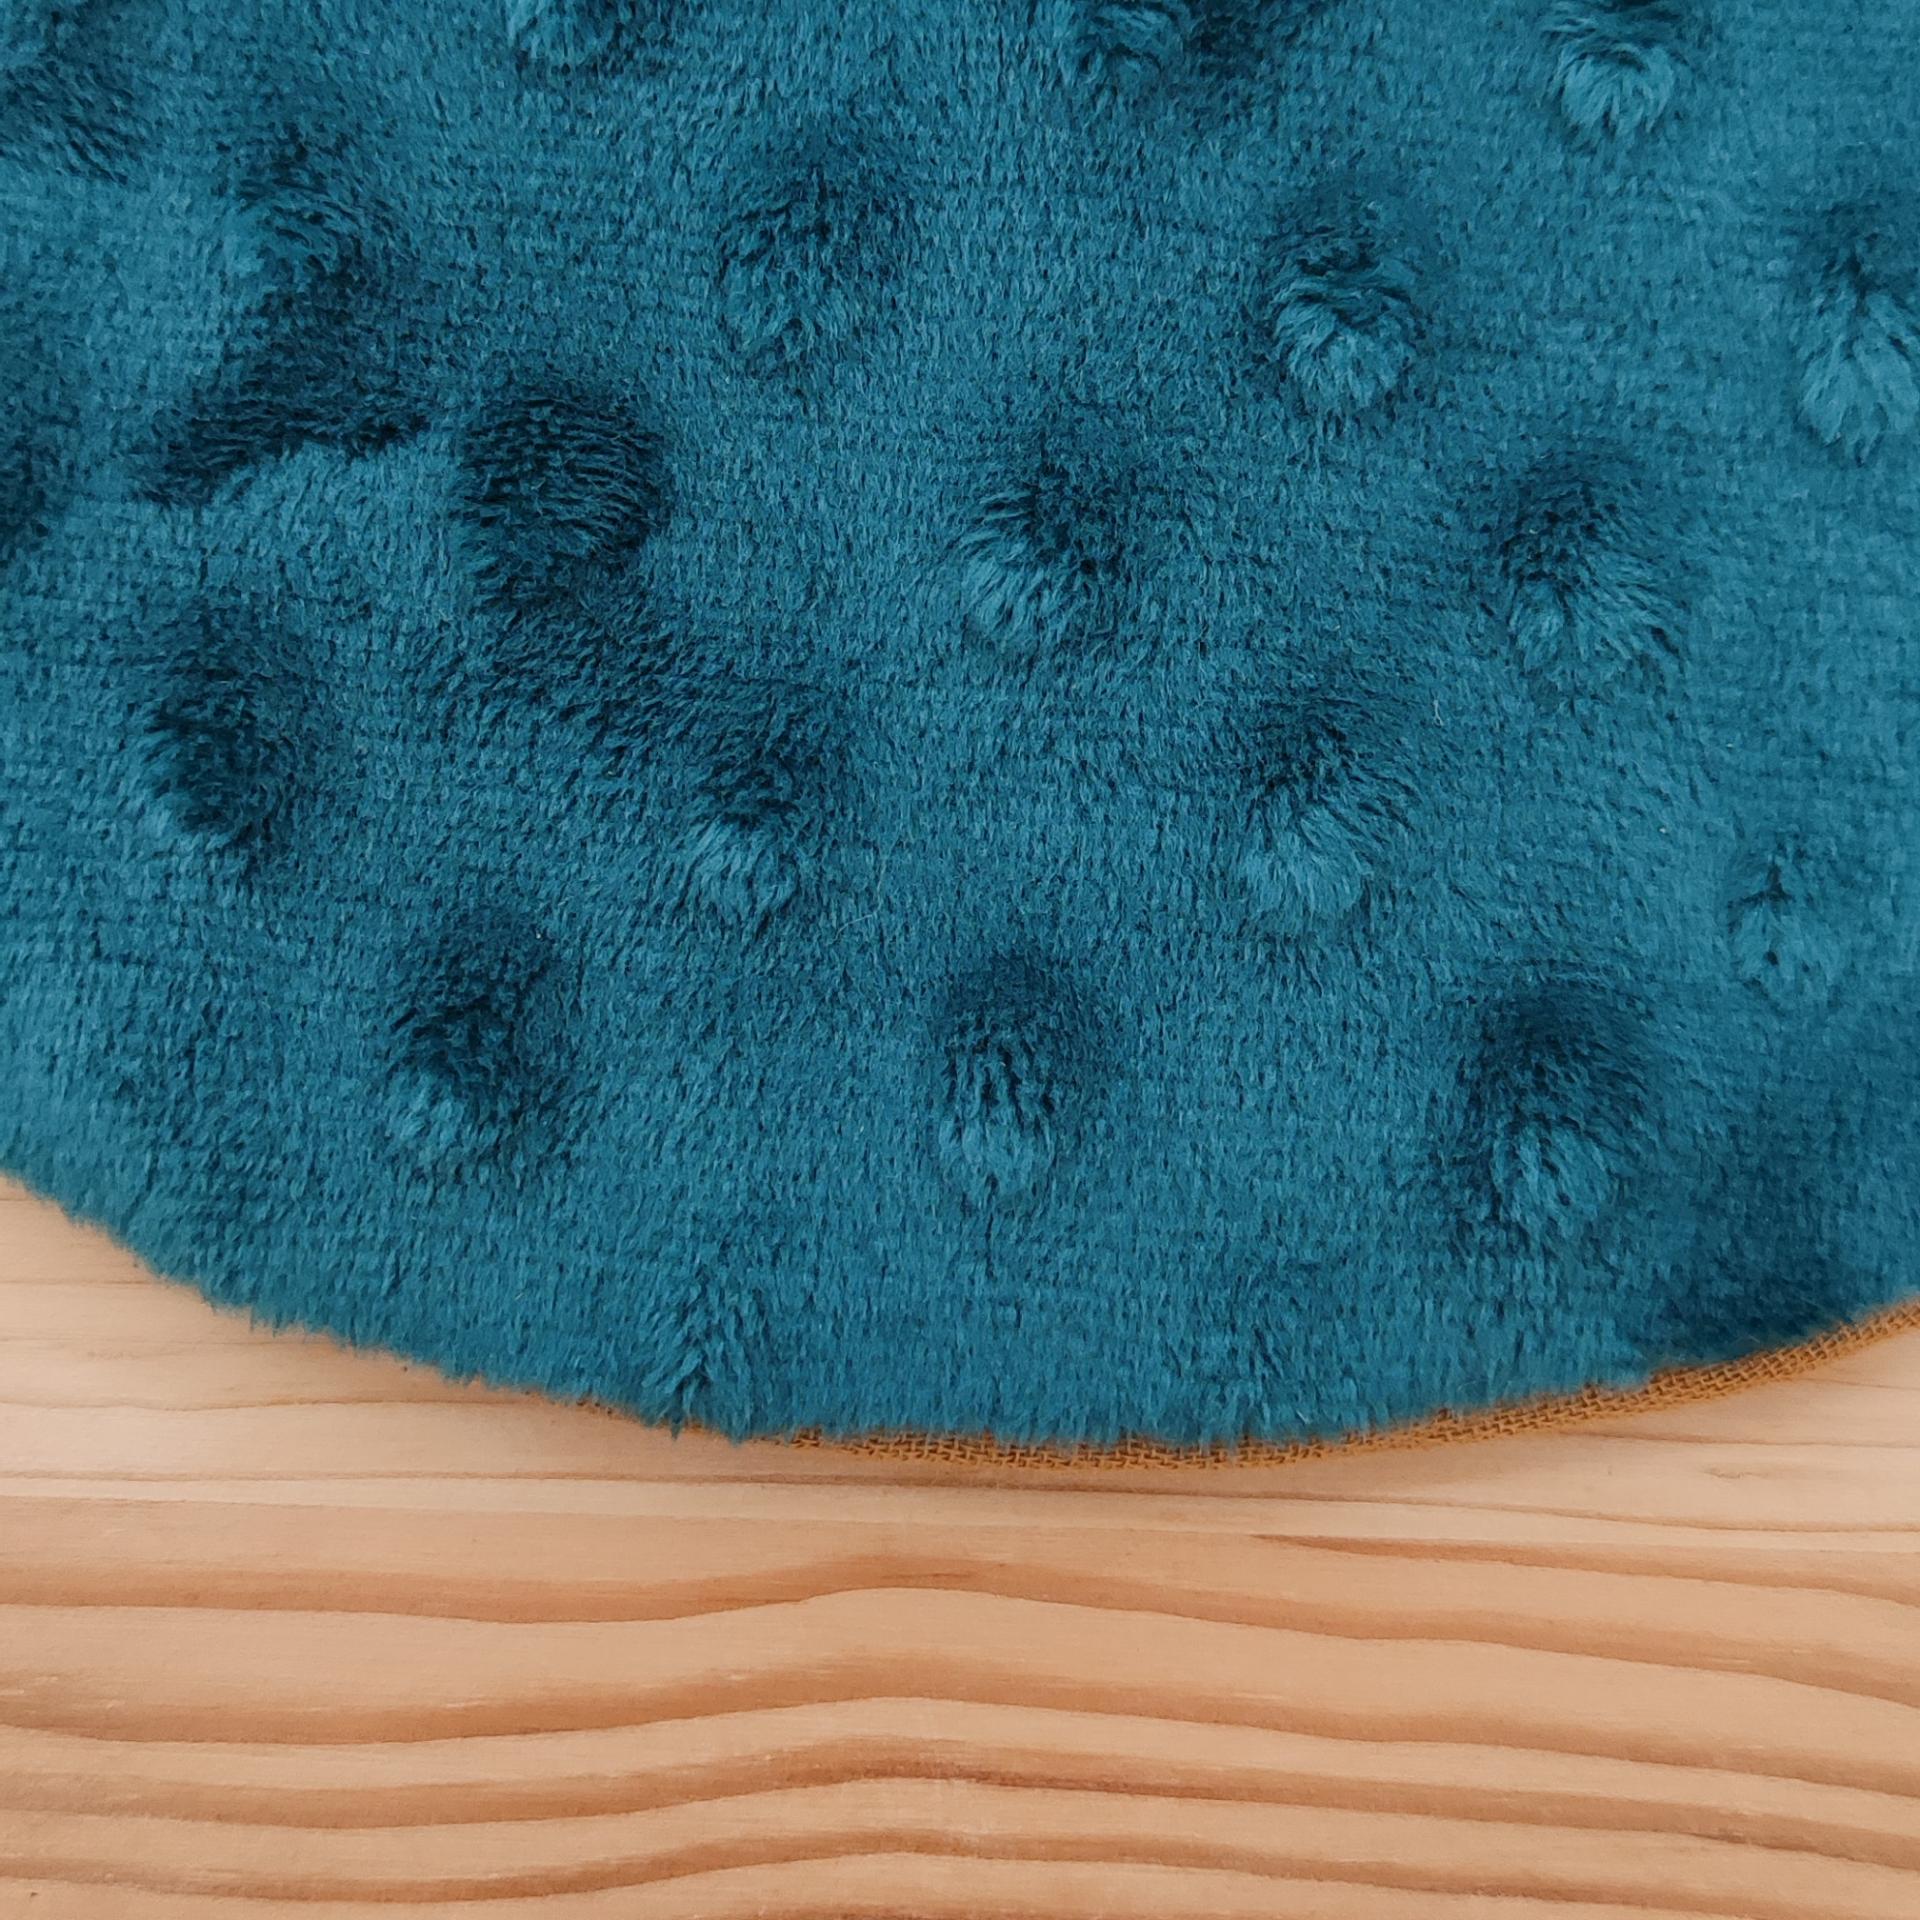 Découvrez le tissu minky de notre doudou sensoriel, idéal pour favoriser la détente et la relaxation de bébé grâce à sa texture toute douce.